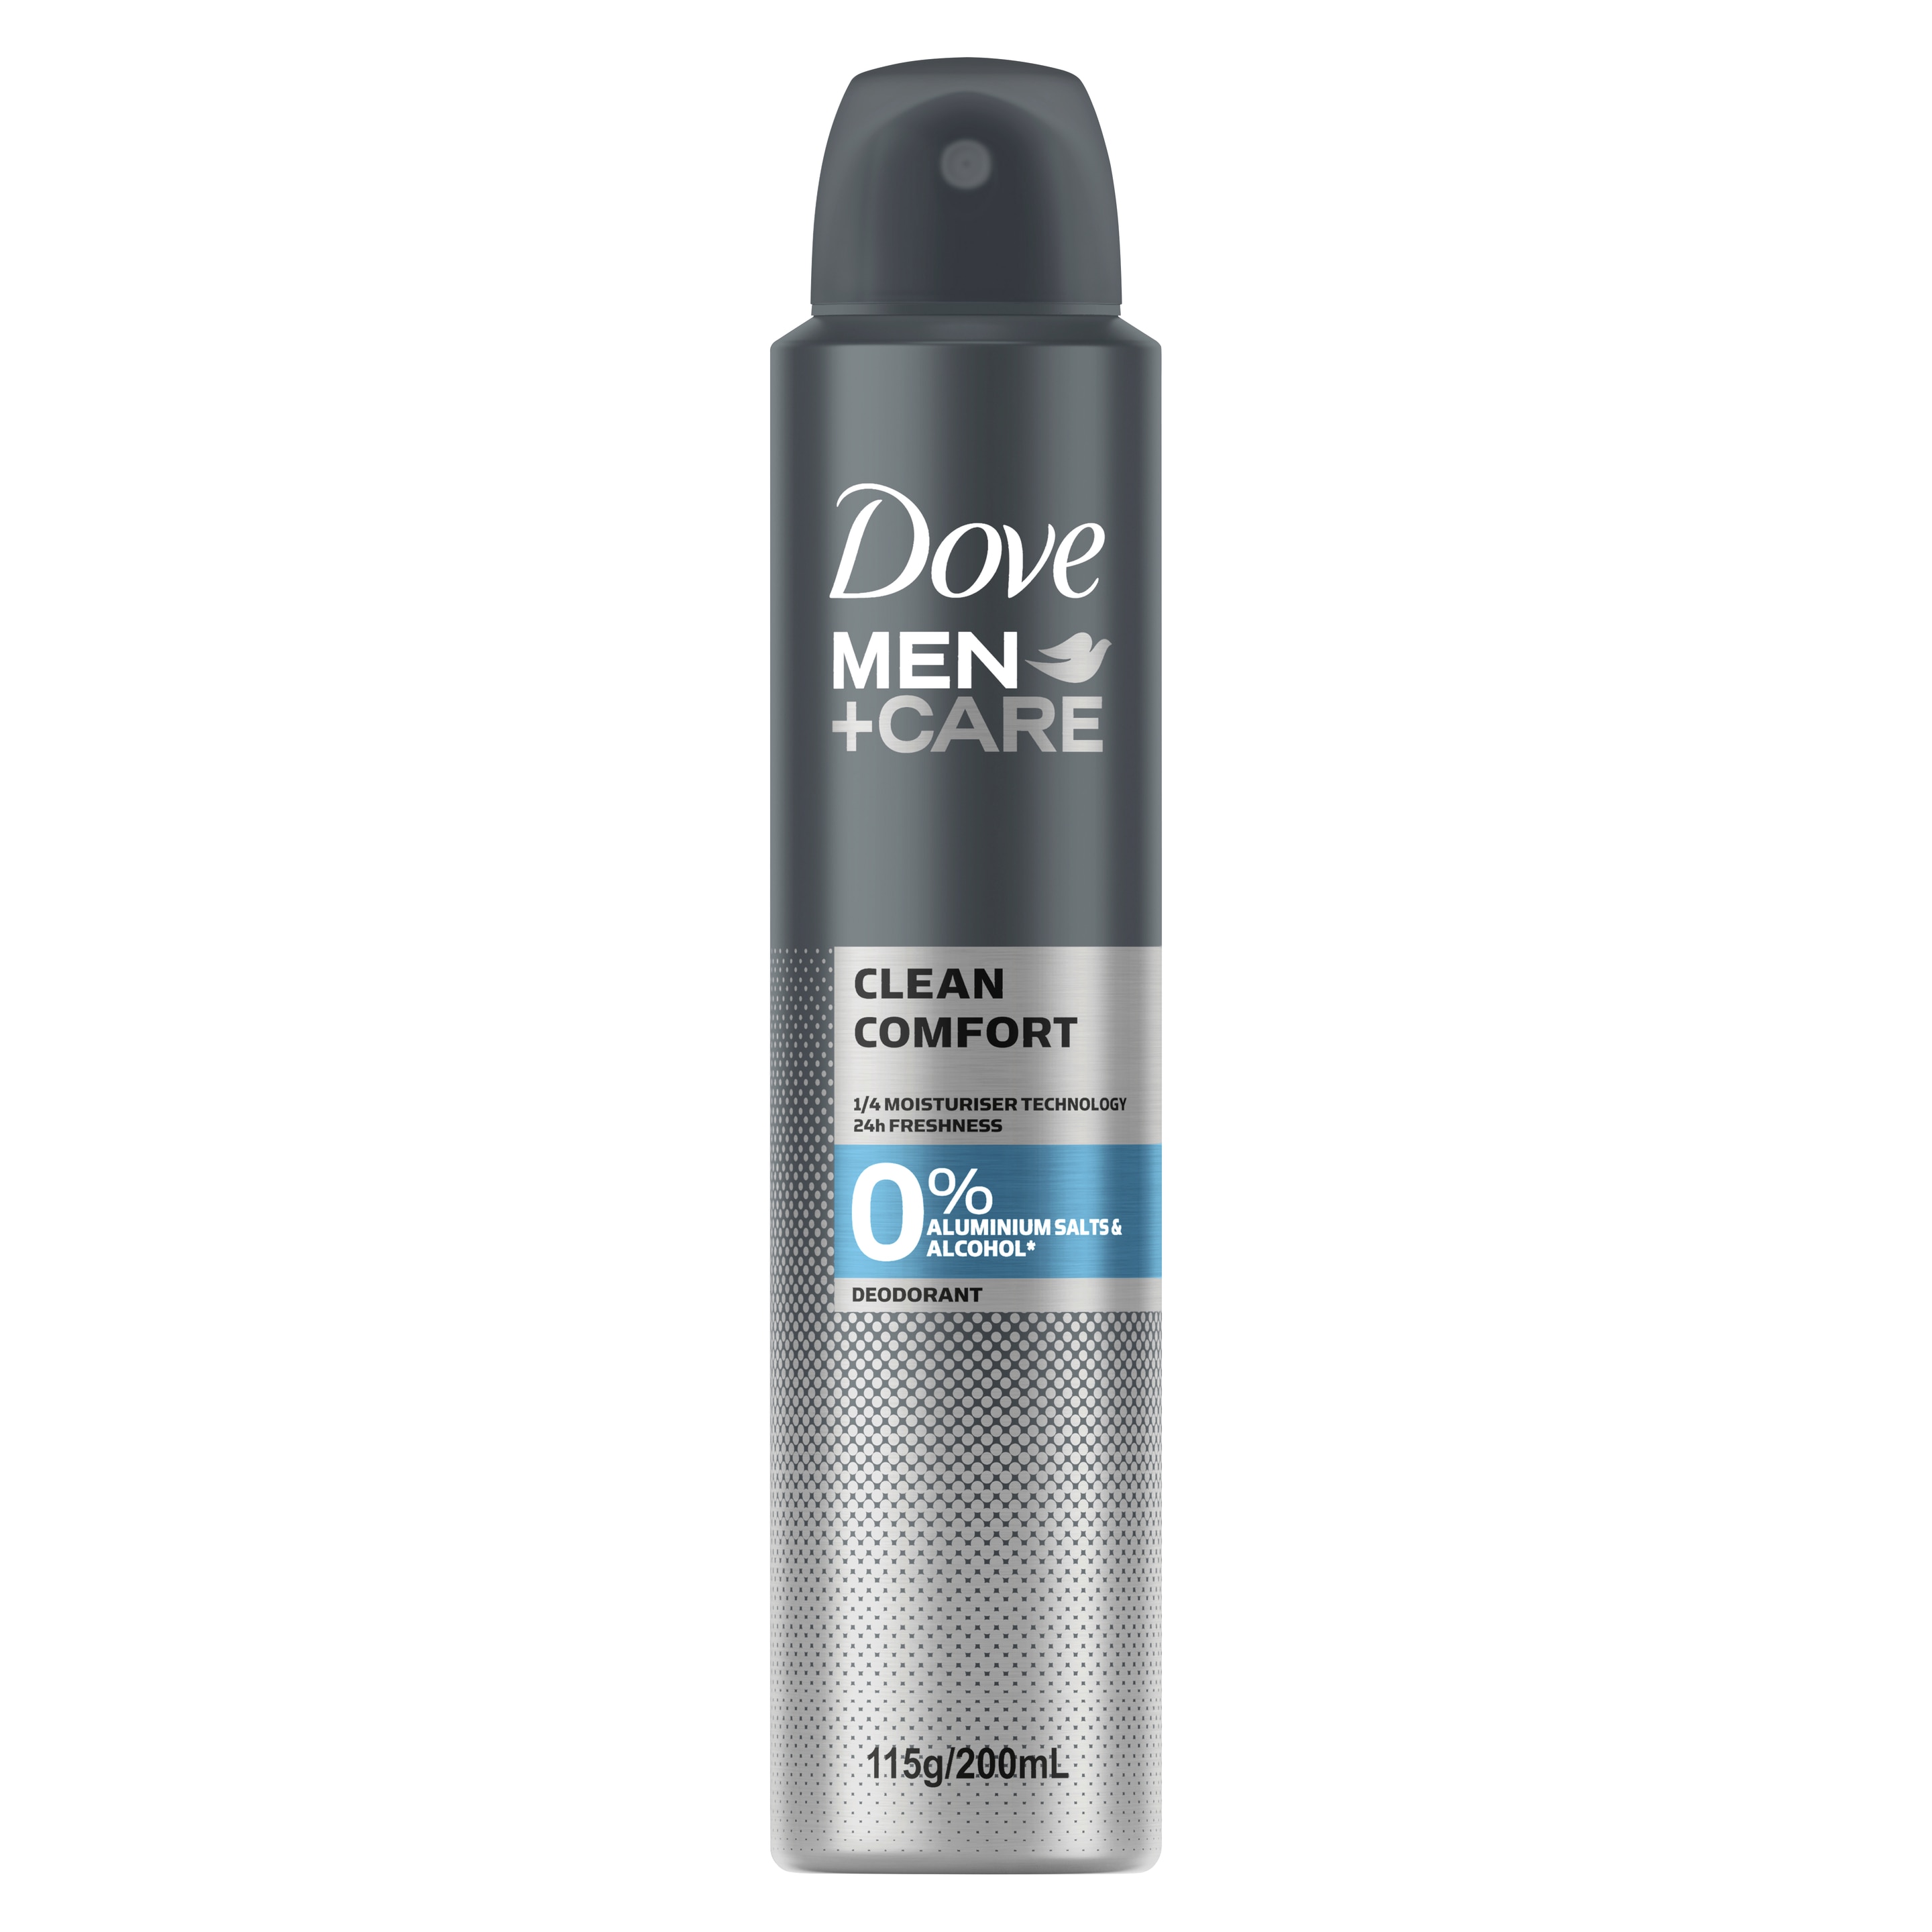 Men+Care 0% Aluminium Aerosol Deodorant Clean Comfort Text